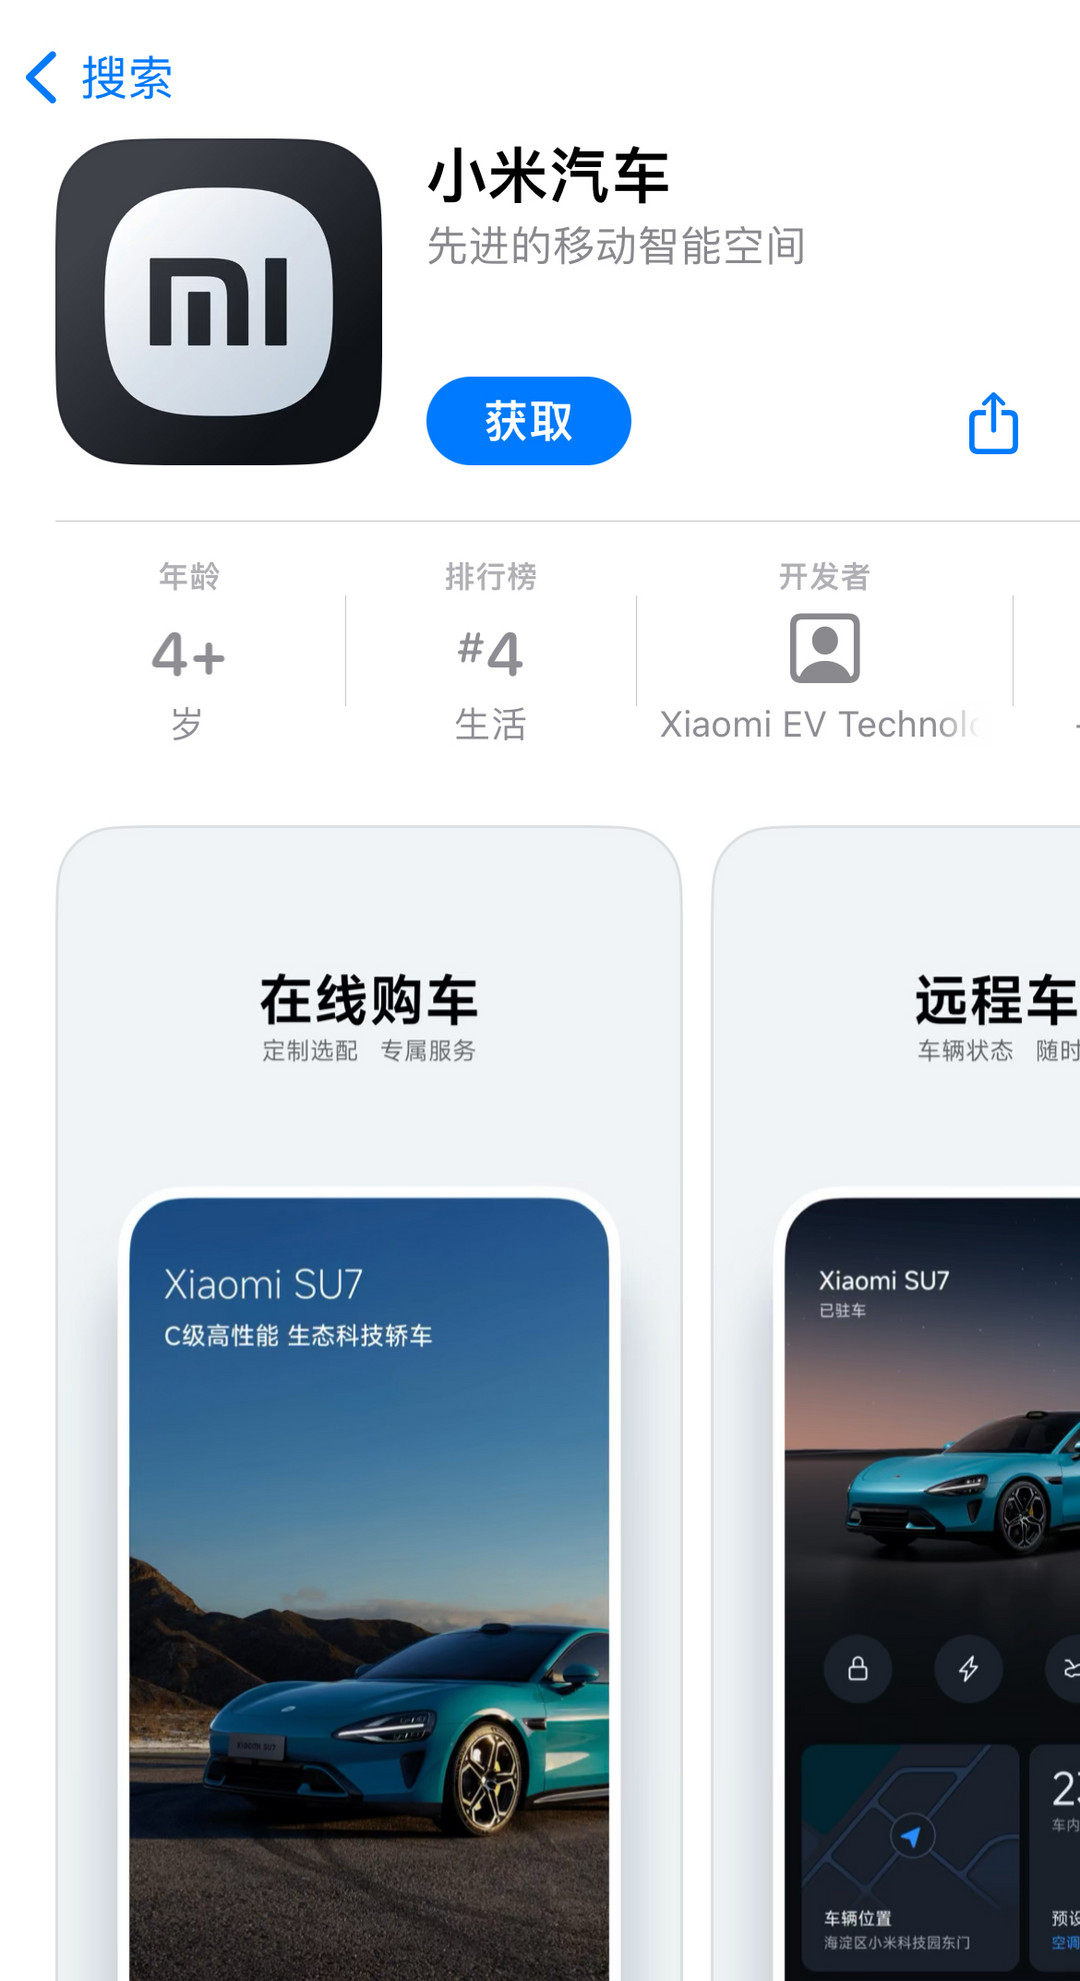 小米汽车官方 App 上架，为SU7上市做好准备